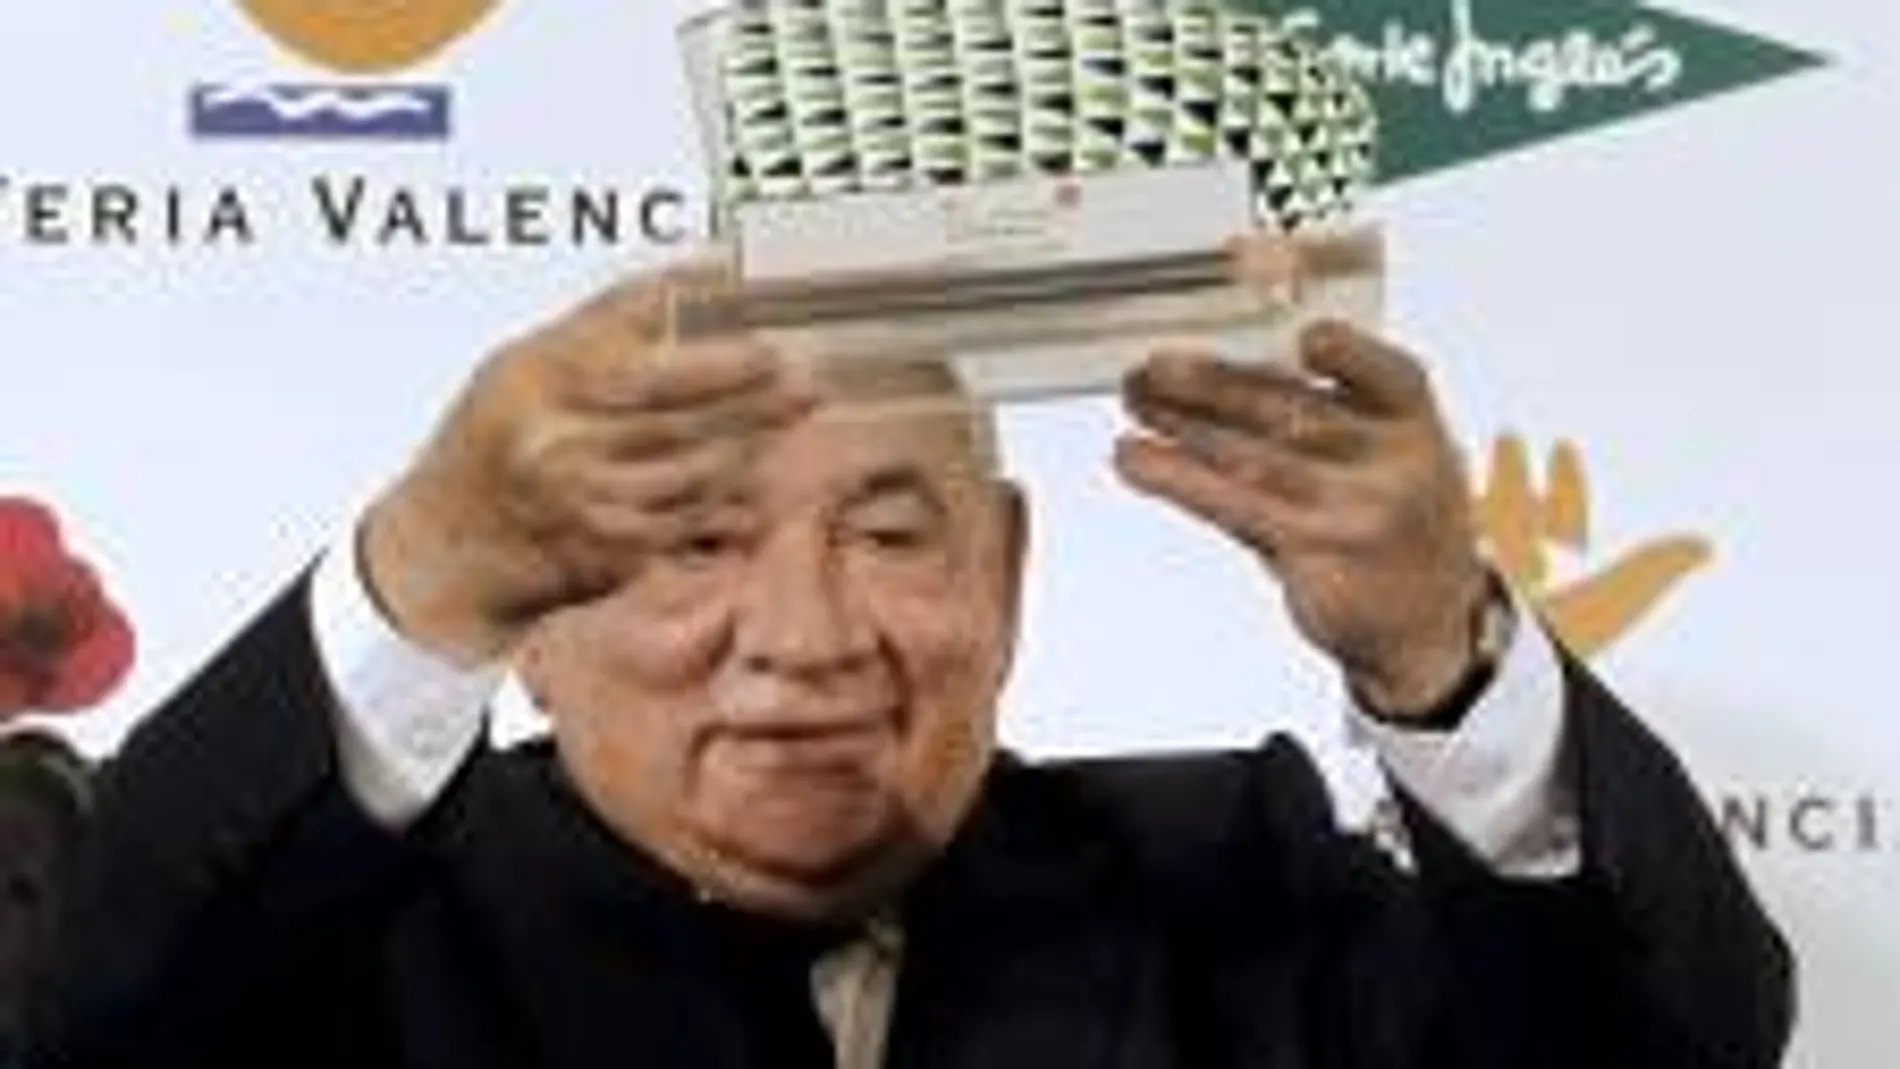 El presidente de "El Corte Inglés", Isidoro Álvarez, recoge un trofeo en reconocimiento de su labor